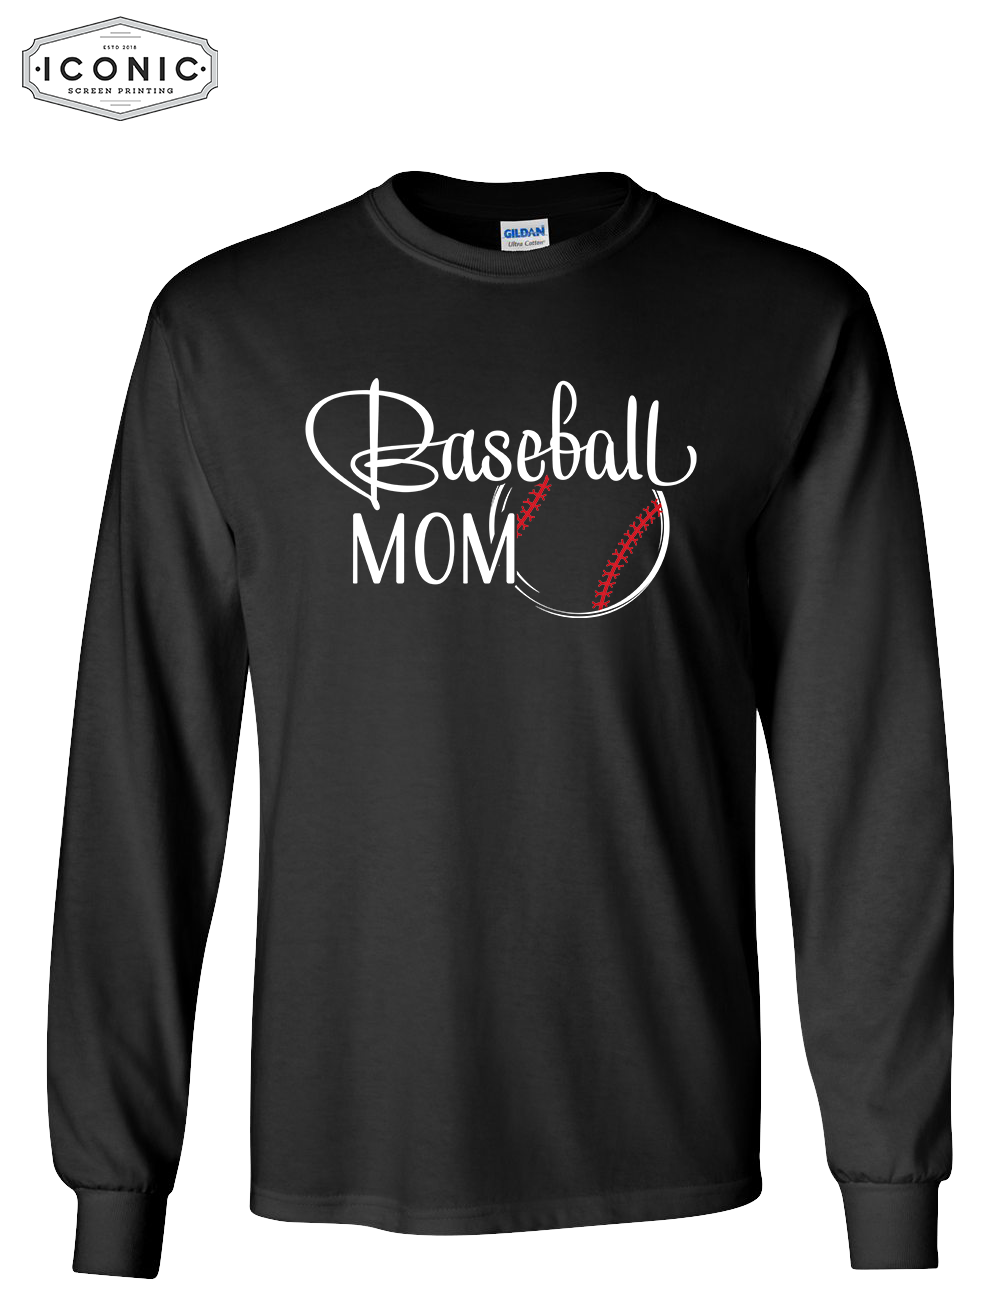 Baseball Mom - Ultra Cotton Long Sleeve